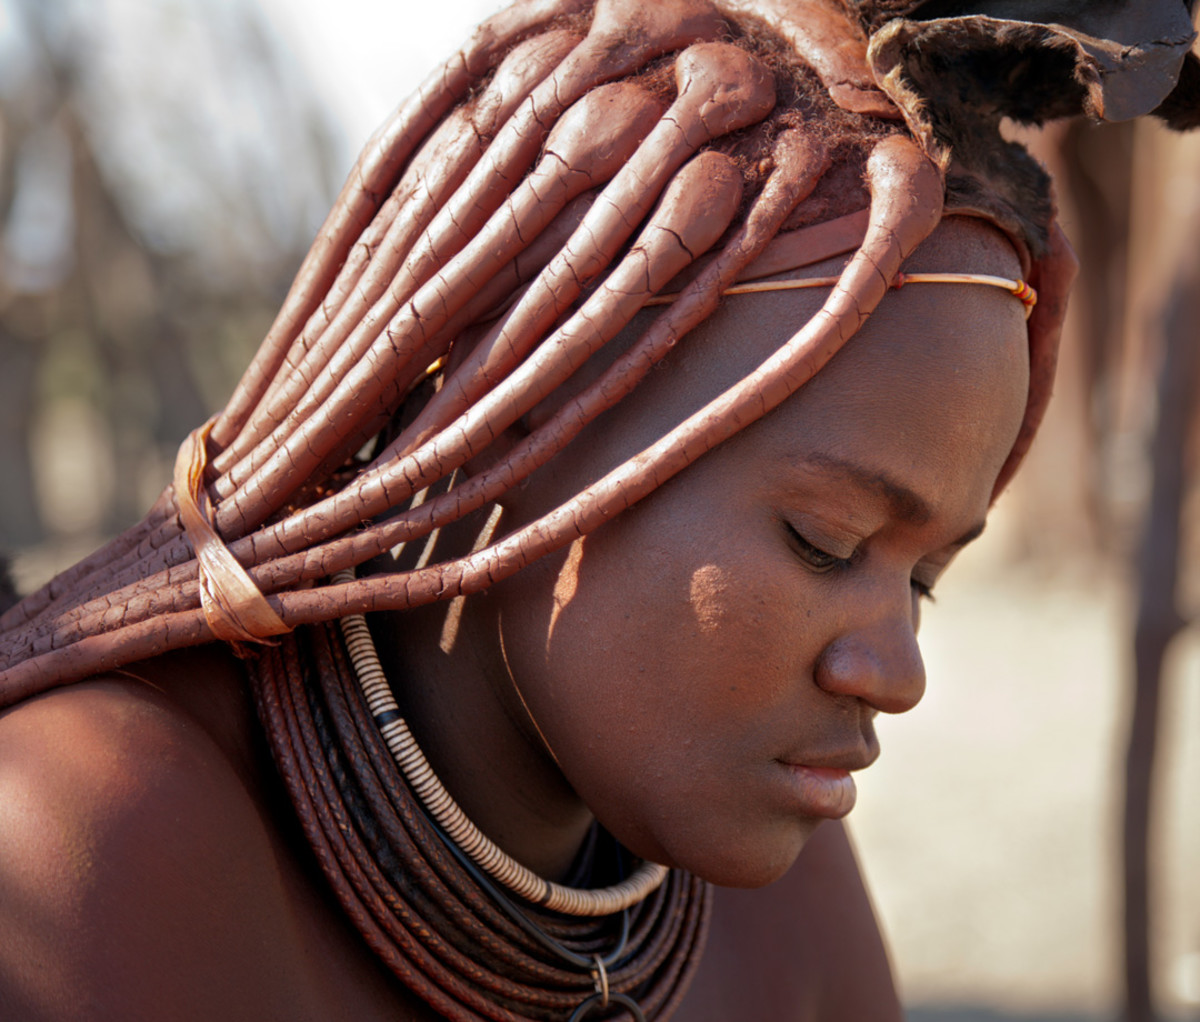 Himba woman in Namibia